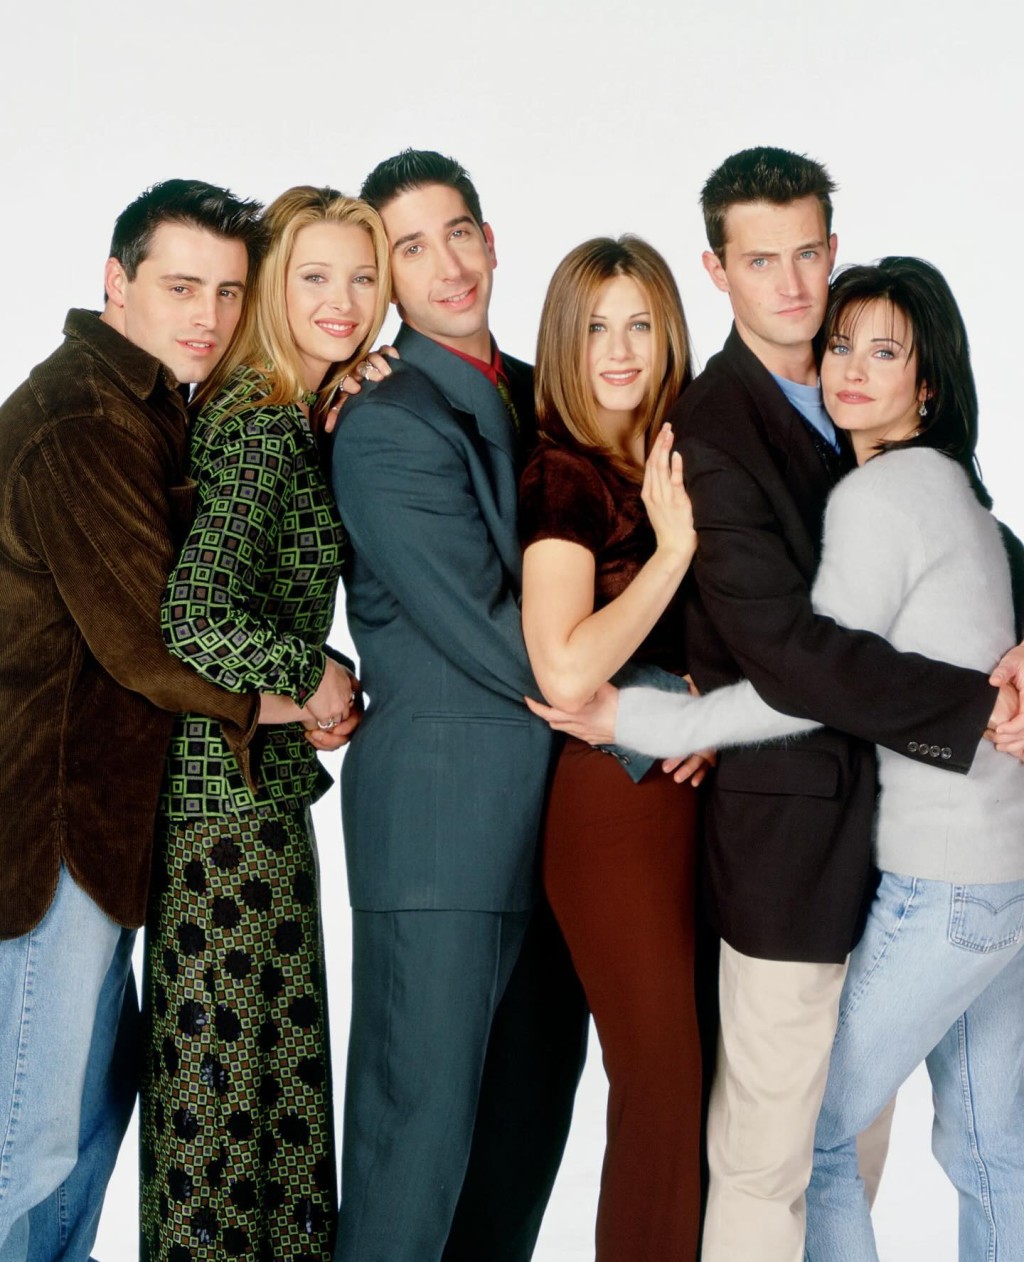 经典美剧《老友记（Friends）》由（左起）、麦利邦（Matt LeBlanc）、丽莎古祖（Lisa Kudrow）、大卫舒威马（David Schwimmer）、珍妮花安妮丝顿（Jennifer Aniston）、马修派利及却妮高丝（Courteney Cox）领衔演出。